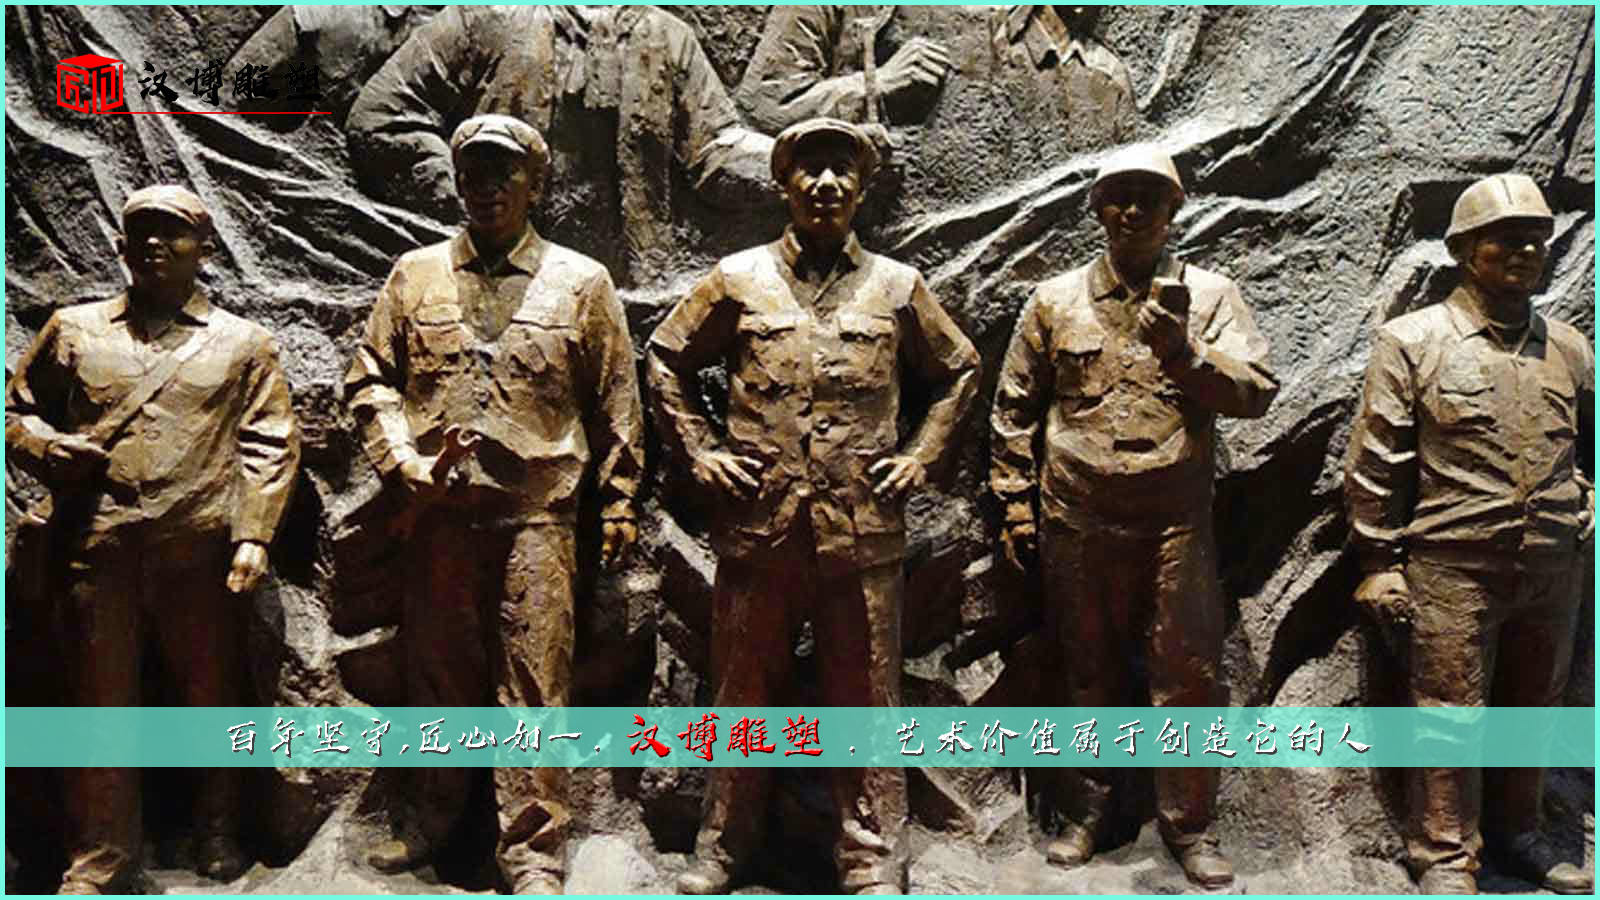 劳动工人主题雕塑